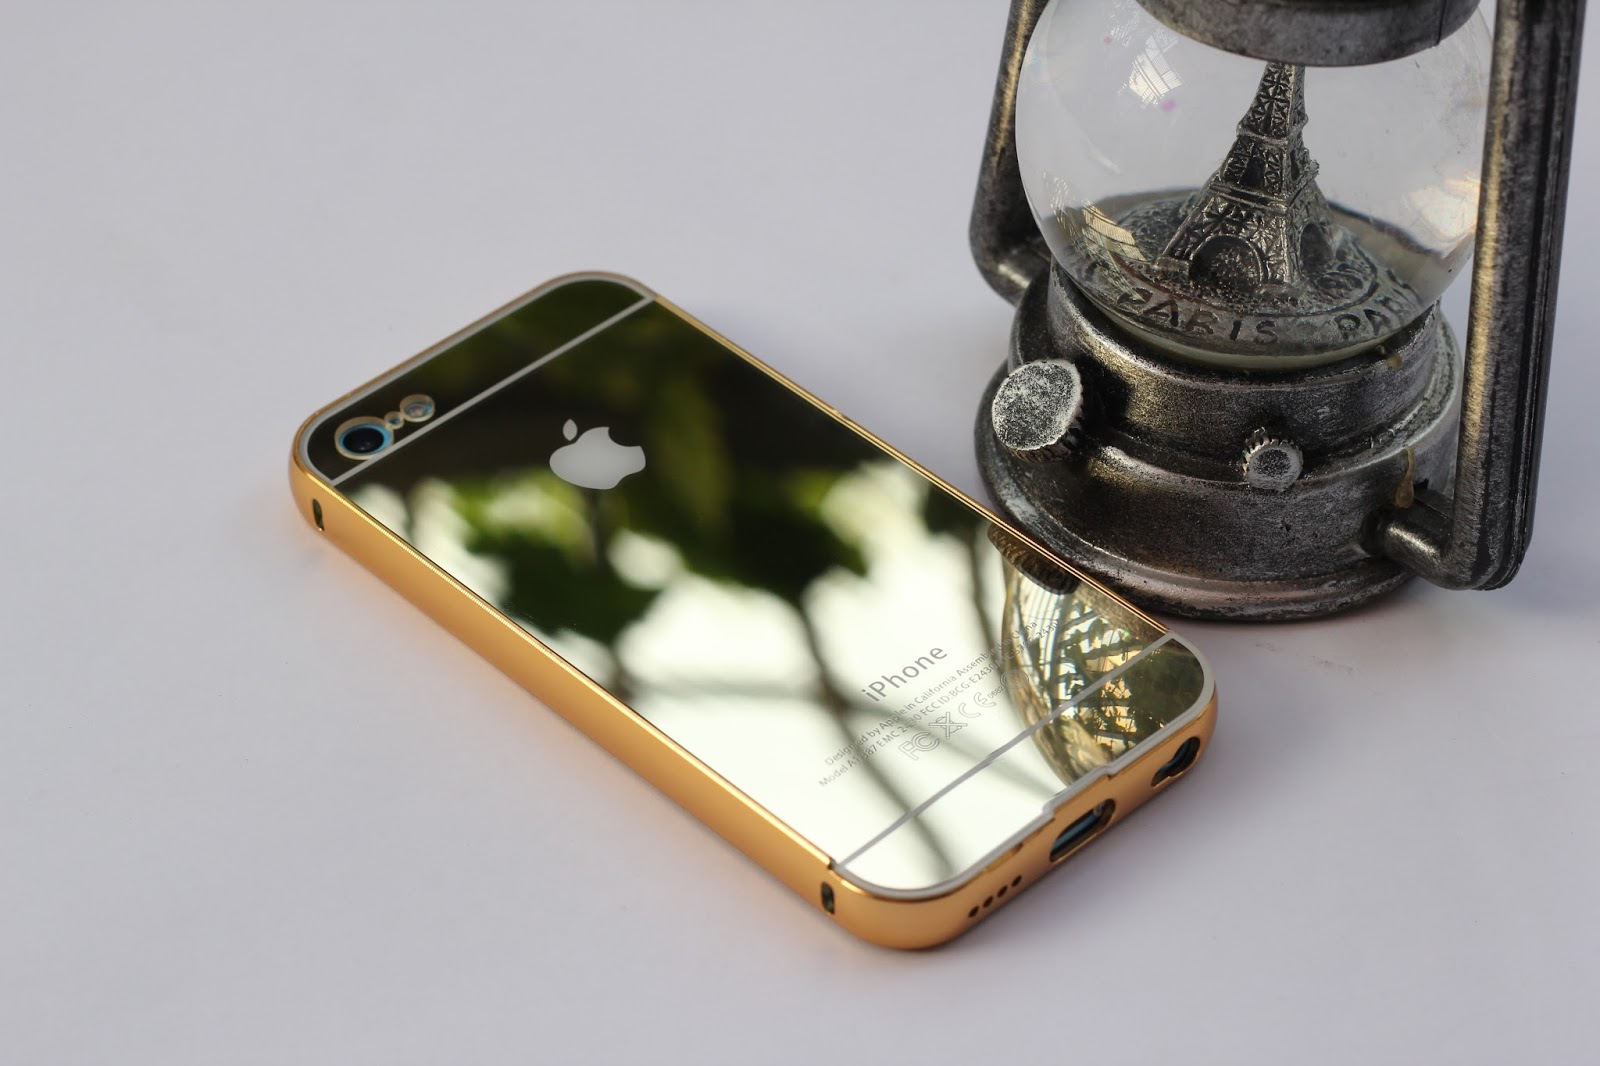 Ốp lưng iPhone 5c thỏi vàng 9999